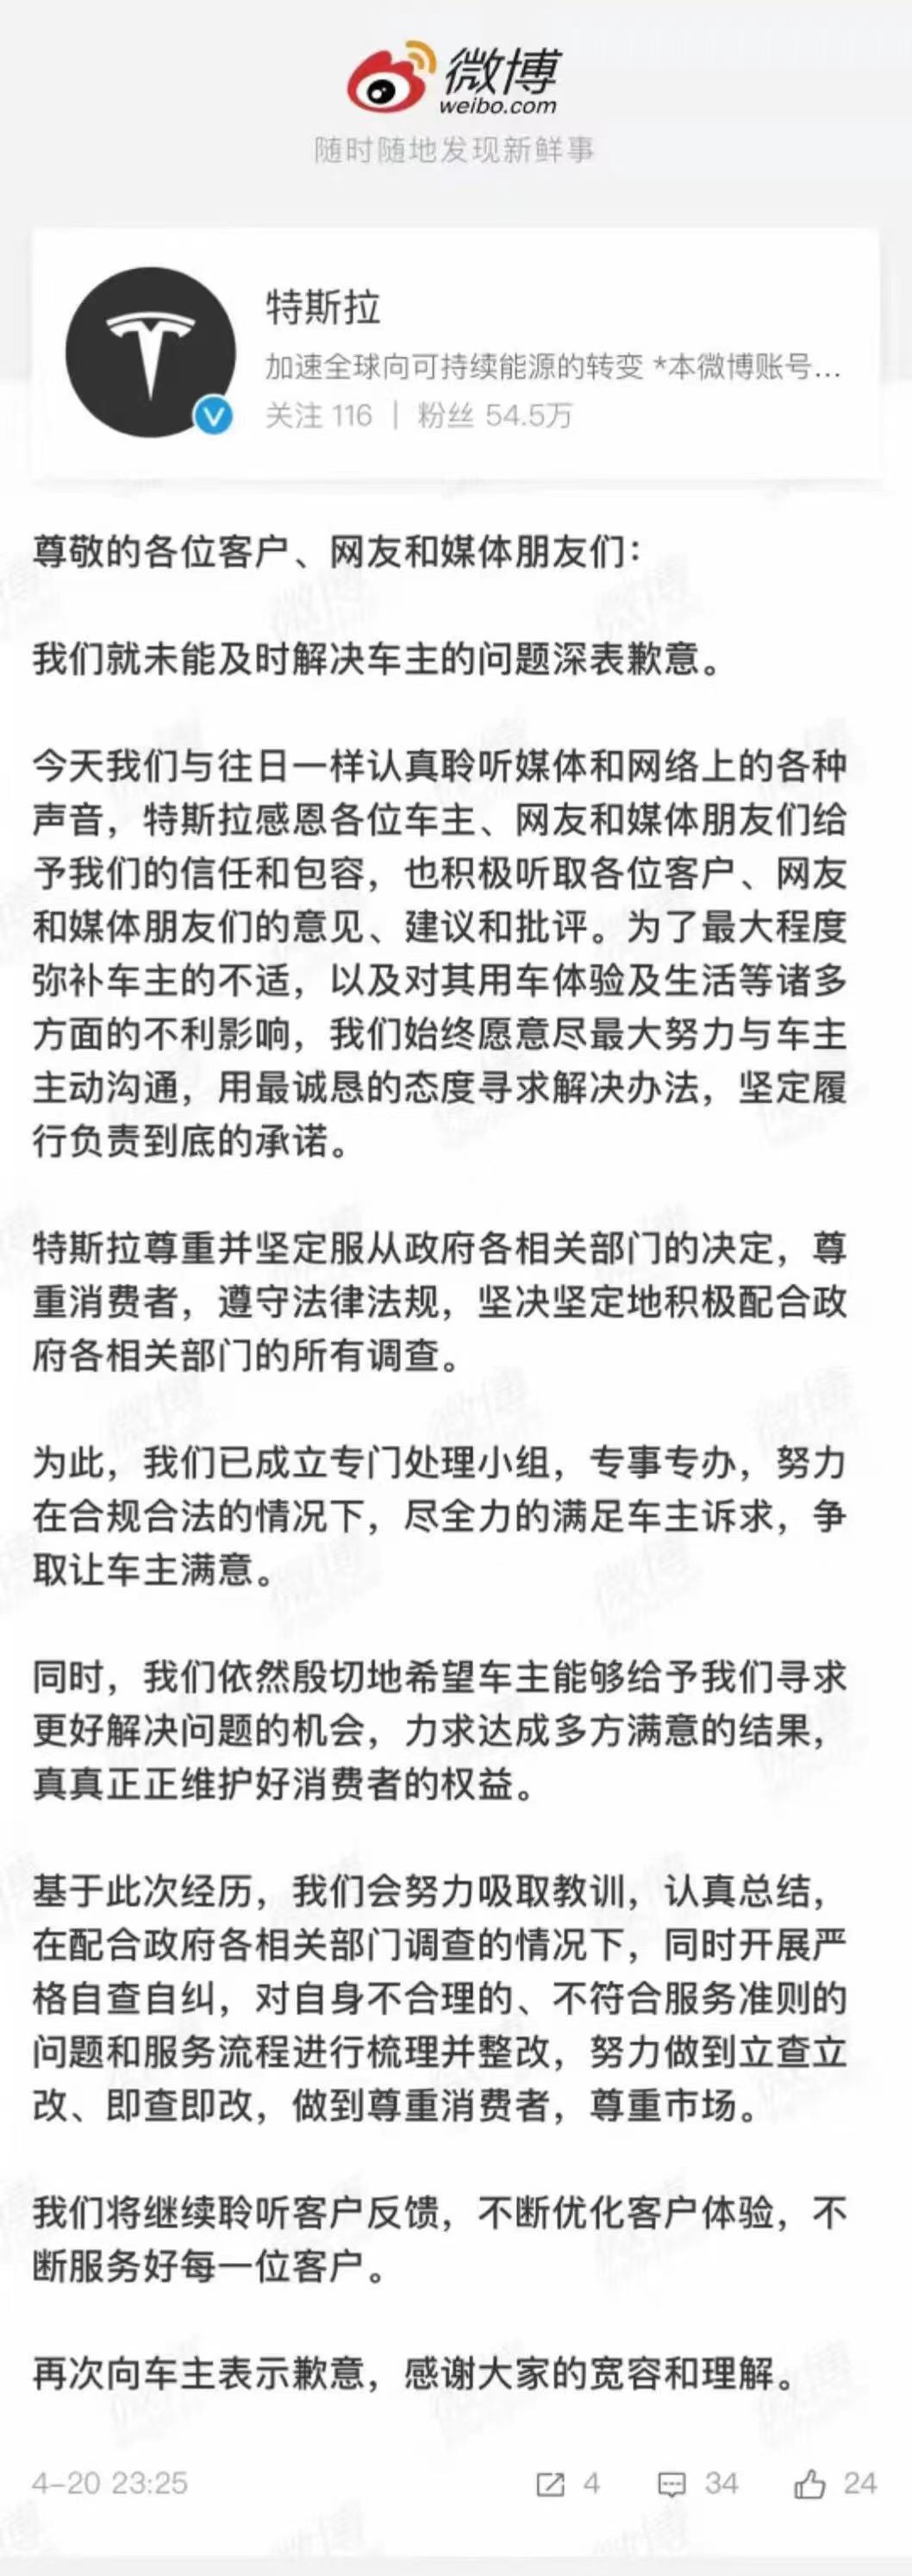 上海车展女车主特斯拉车顶维权，今日上午行拘期满解除拘留